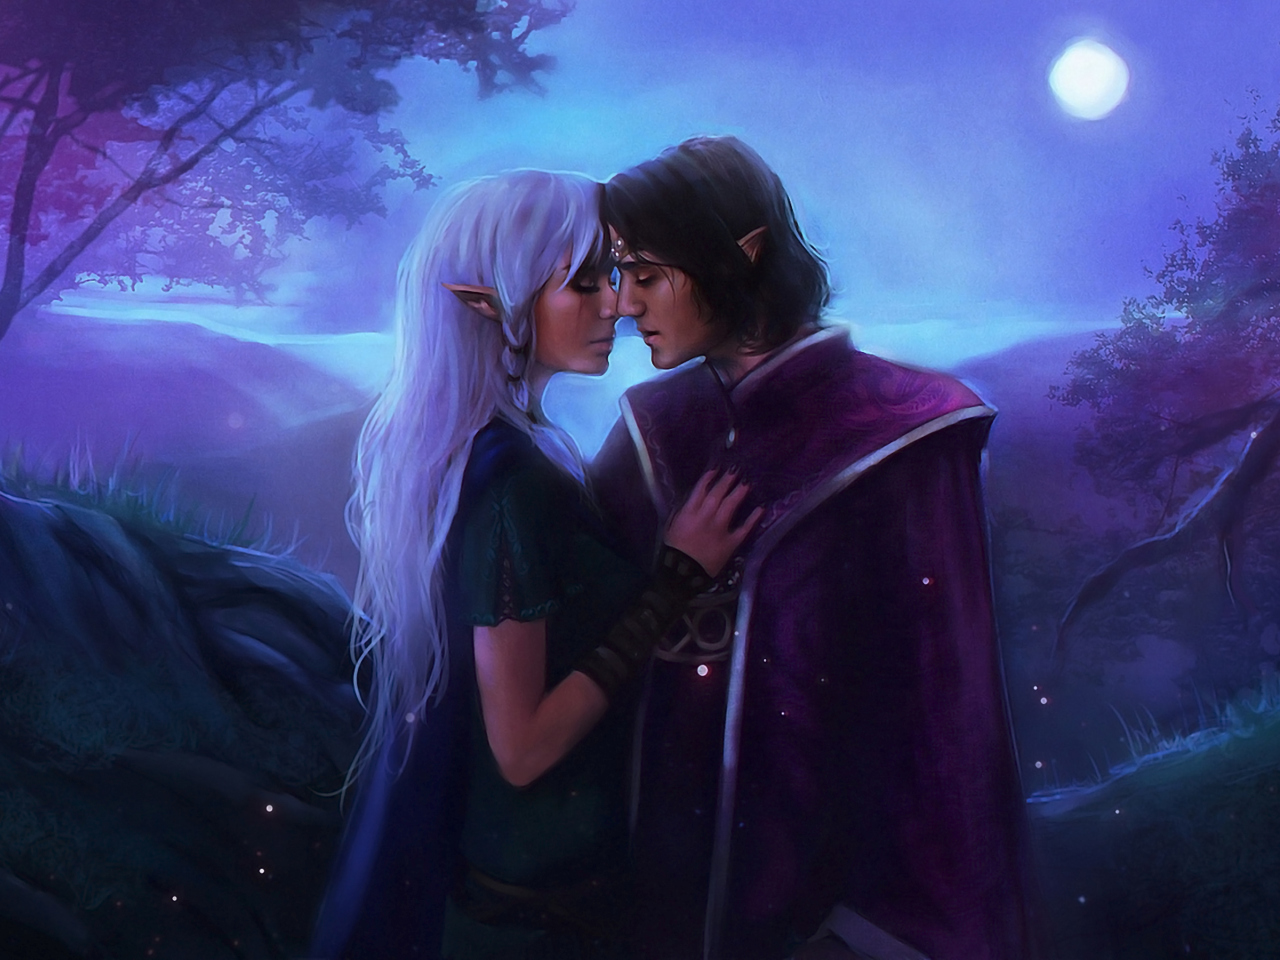 Das Love In Moonlight Fantasy Wallpaper 1280x960